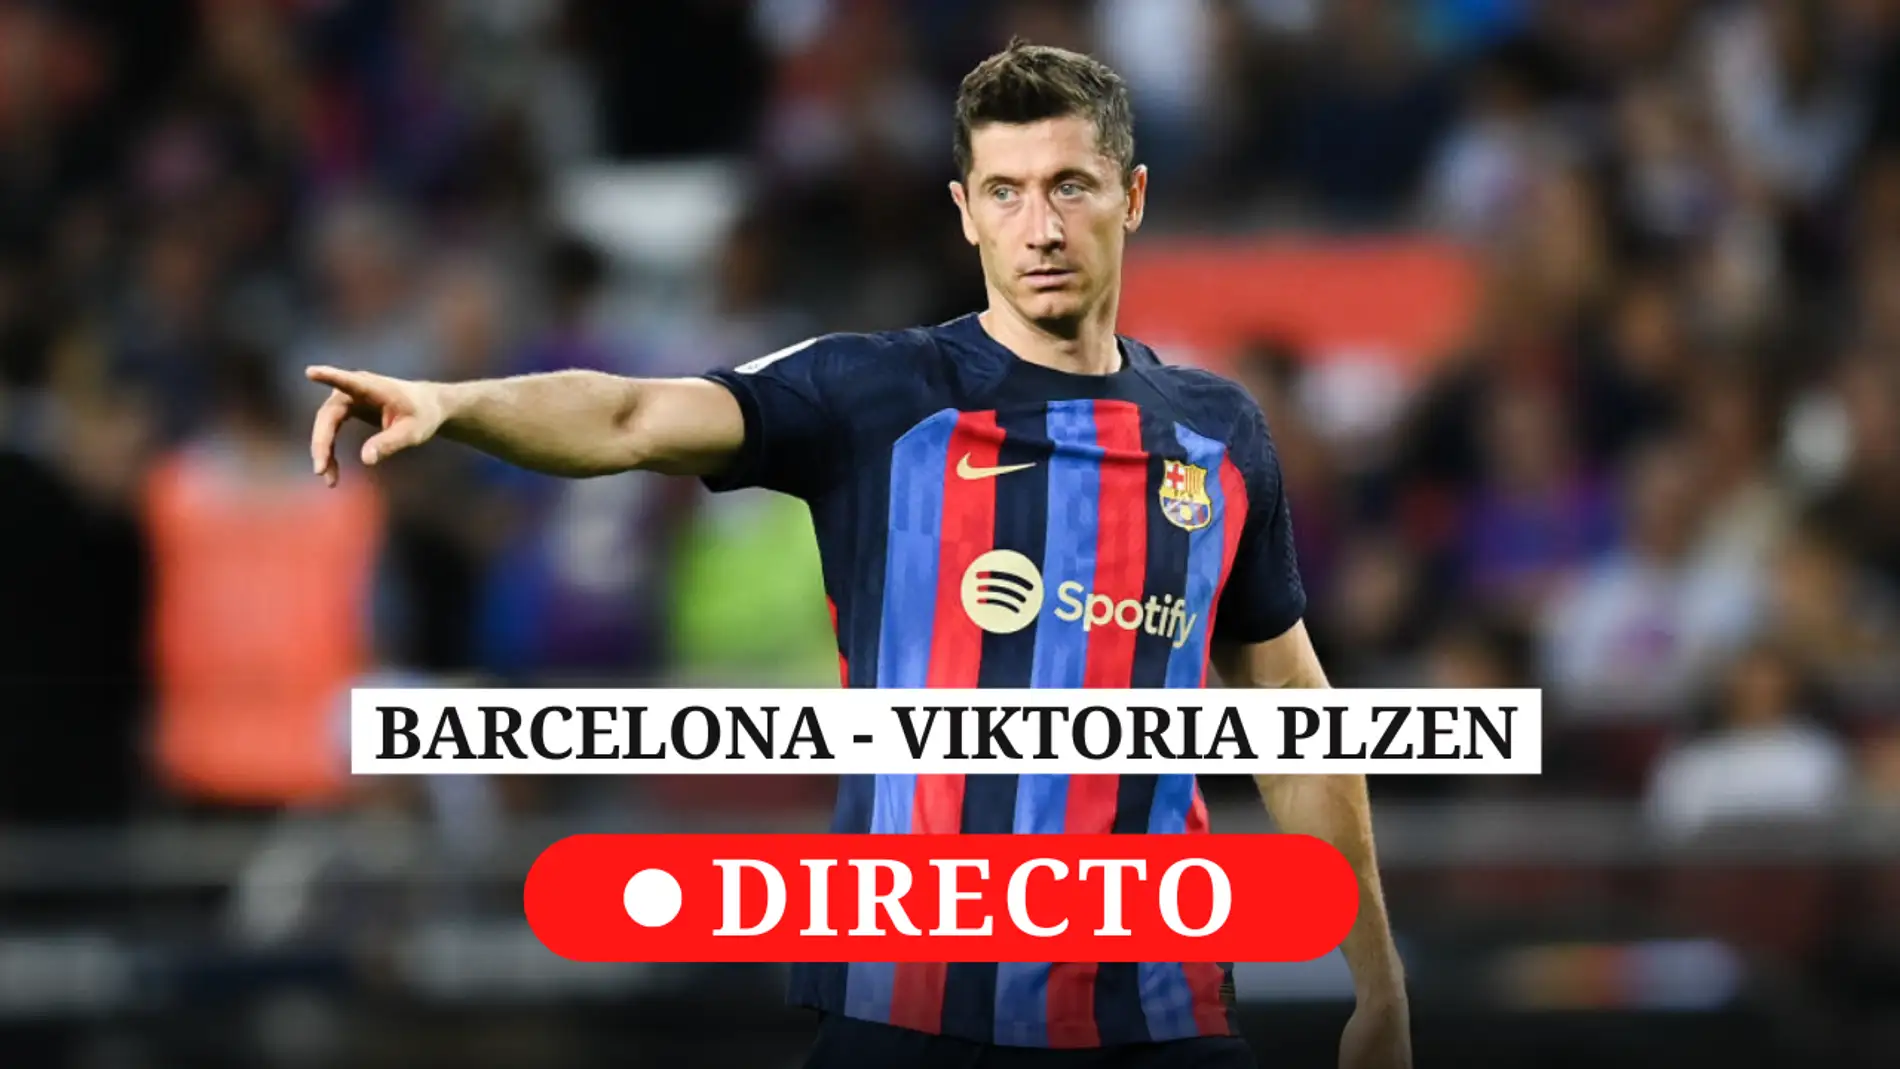 Barcelona - Viktoria Plzen: resultado de hoy, análisis y comentarios del partido de Champions League Onda